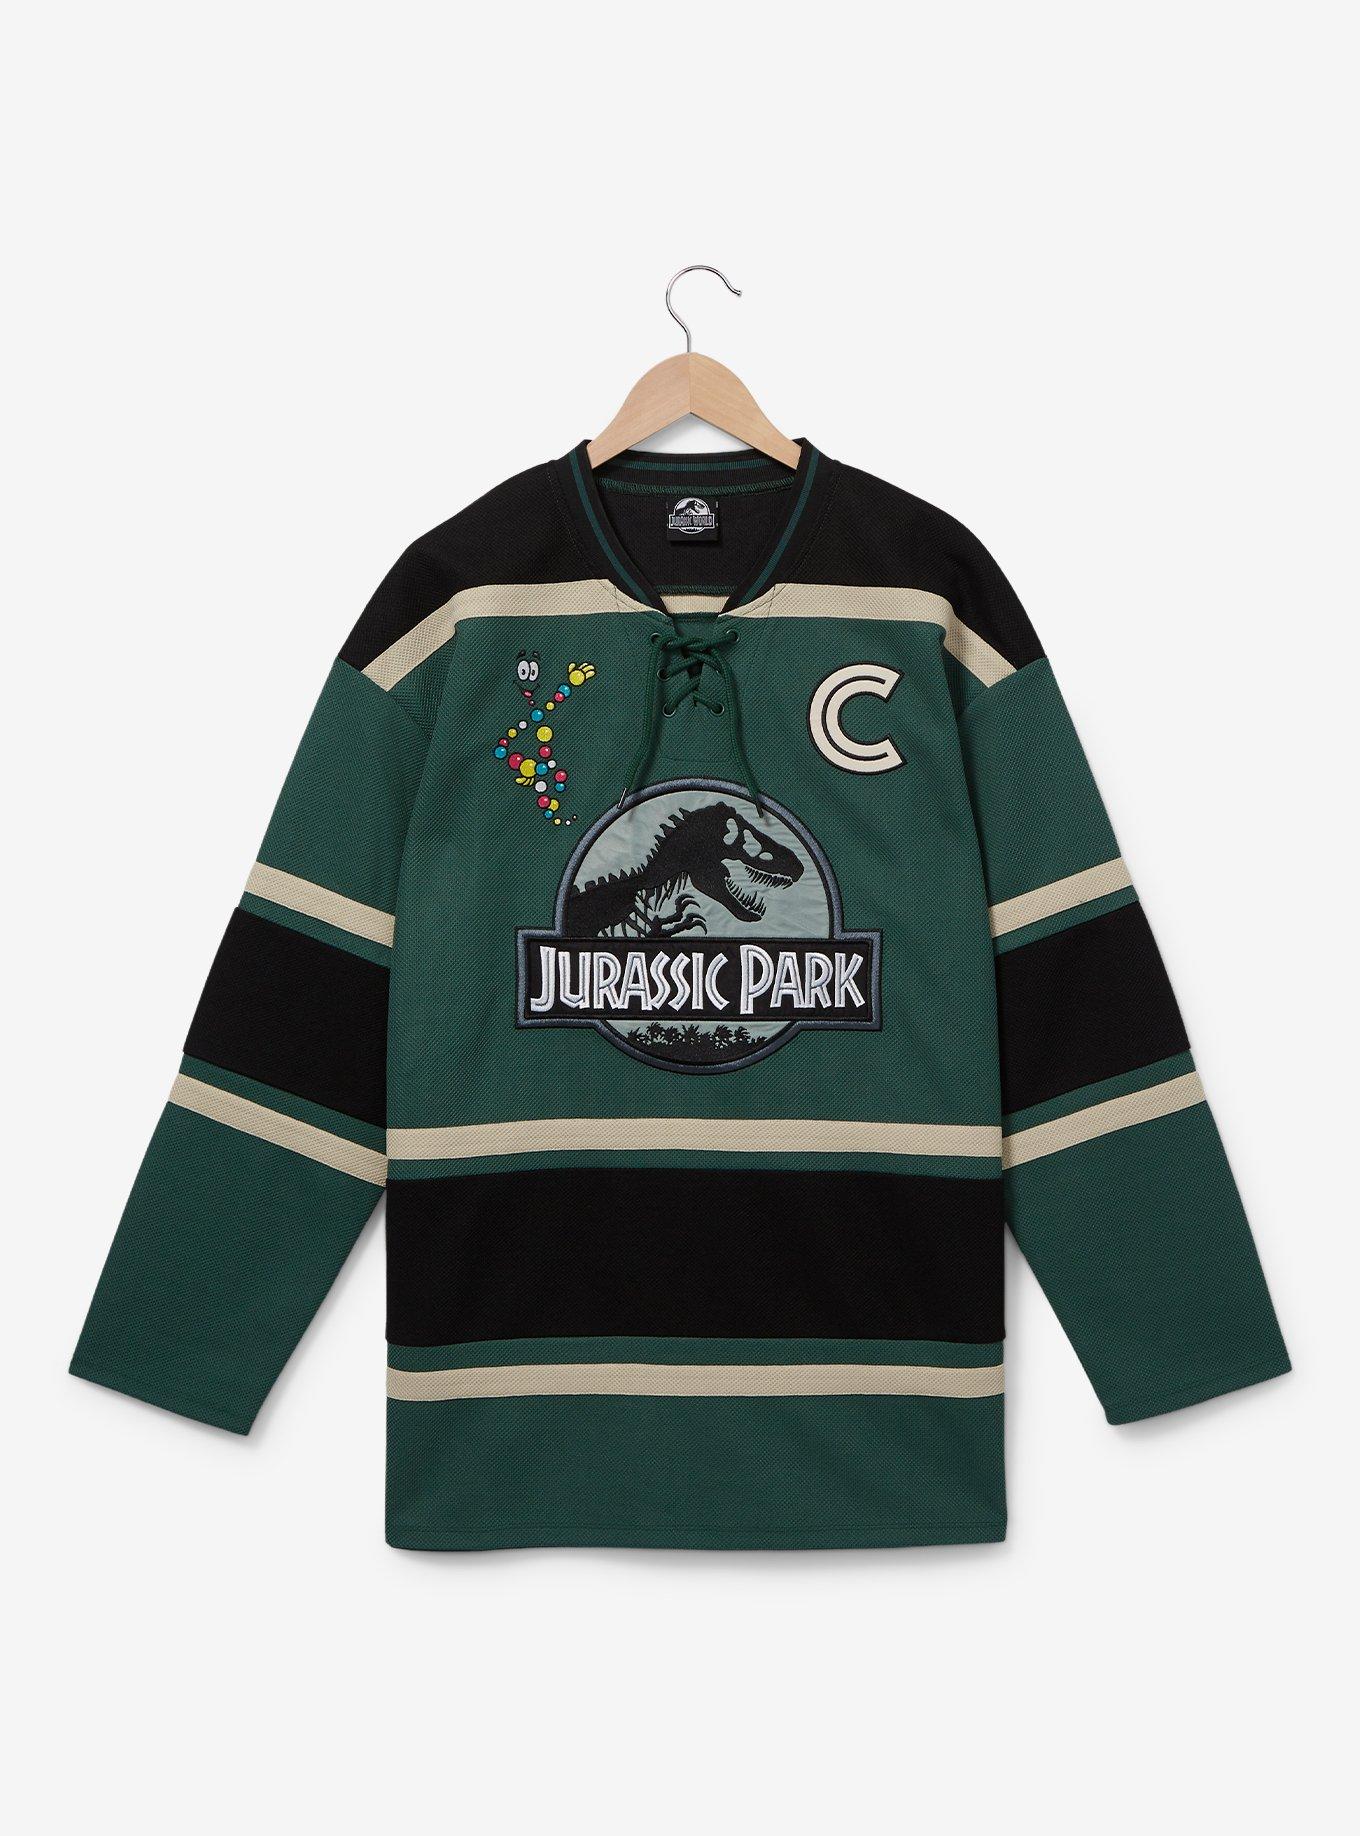 Cobra Kai Hockey Jersey